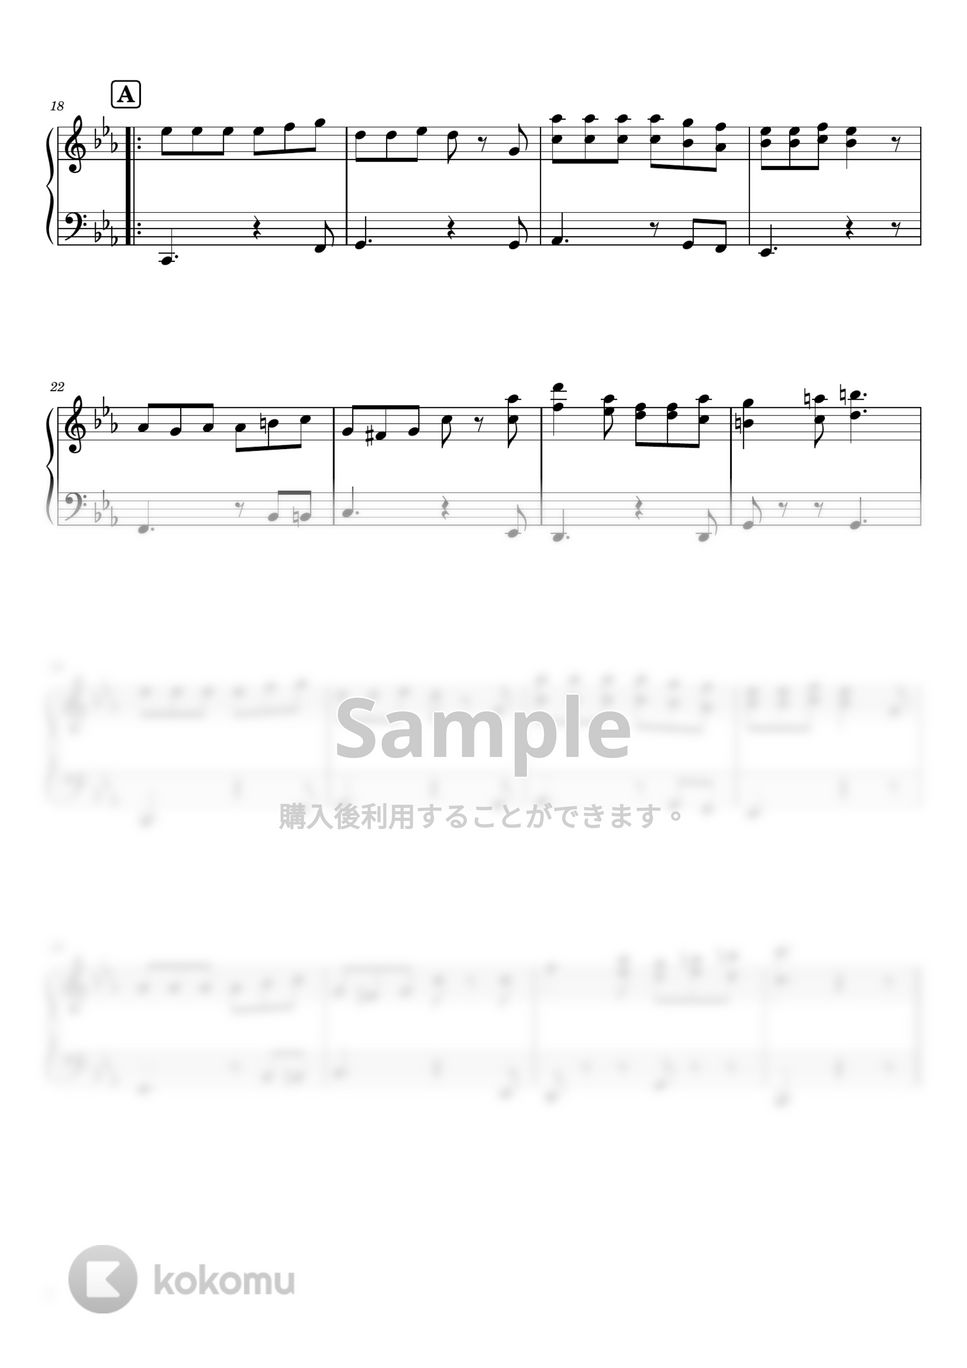 ナナホシ管弦楽団 - 抜錨 (ピアノソロ / 中級) by SuperMomoFactory